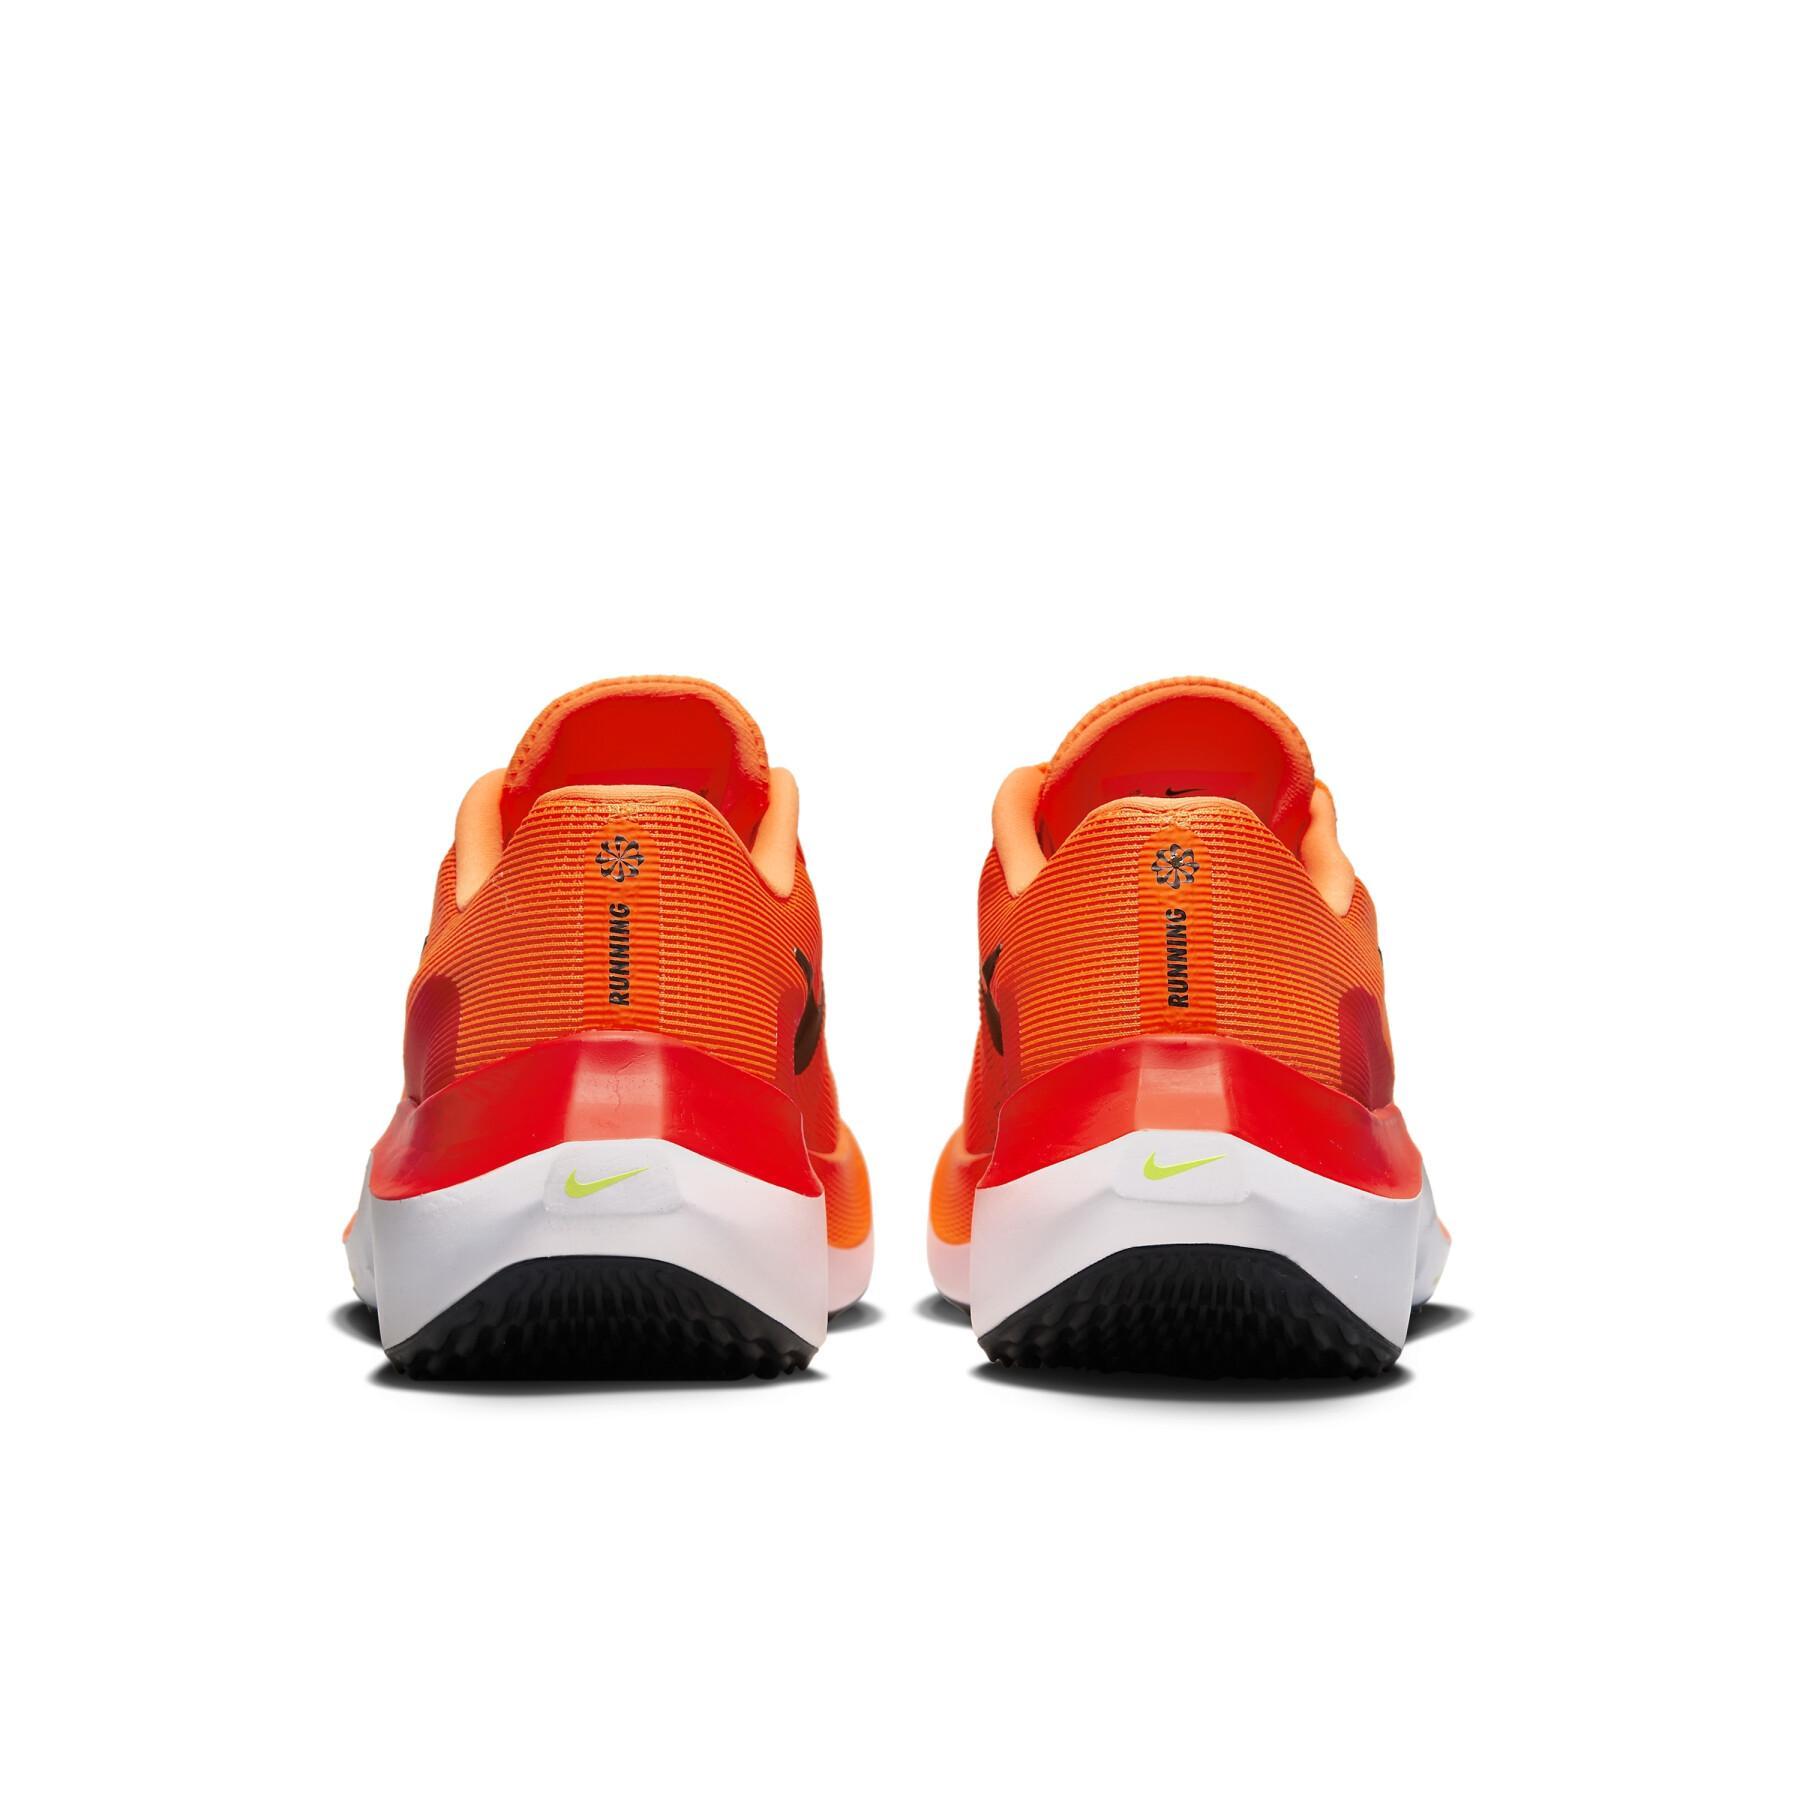 Zapatillas para correr Nike Zoom Fly 5